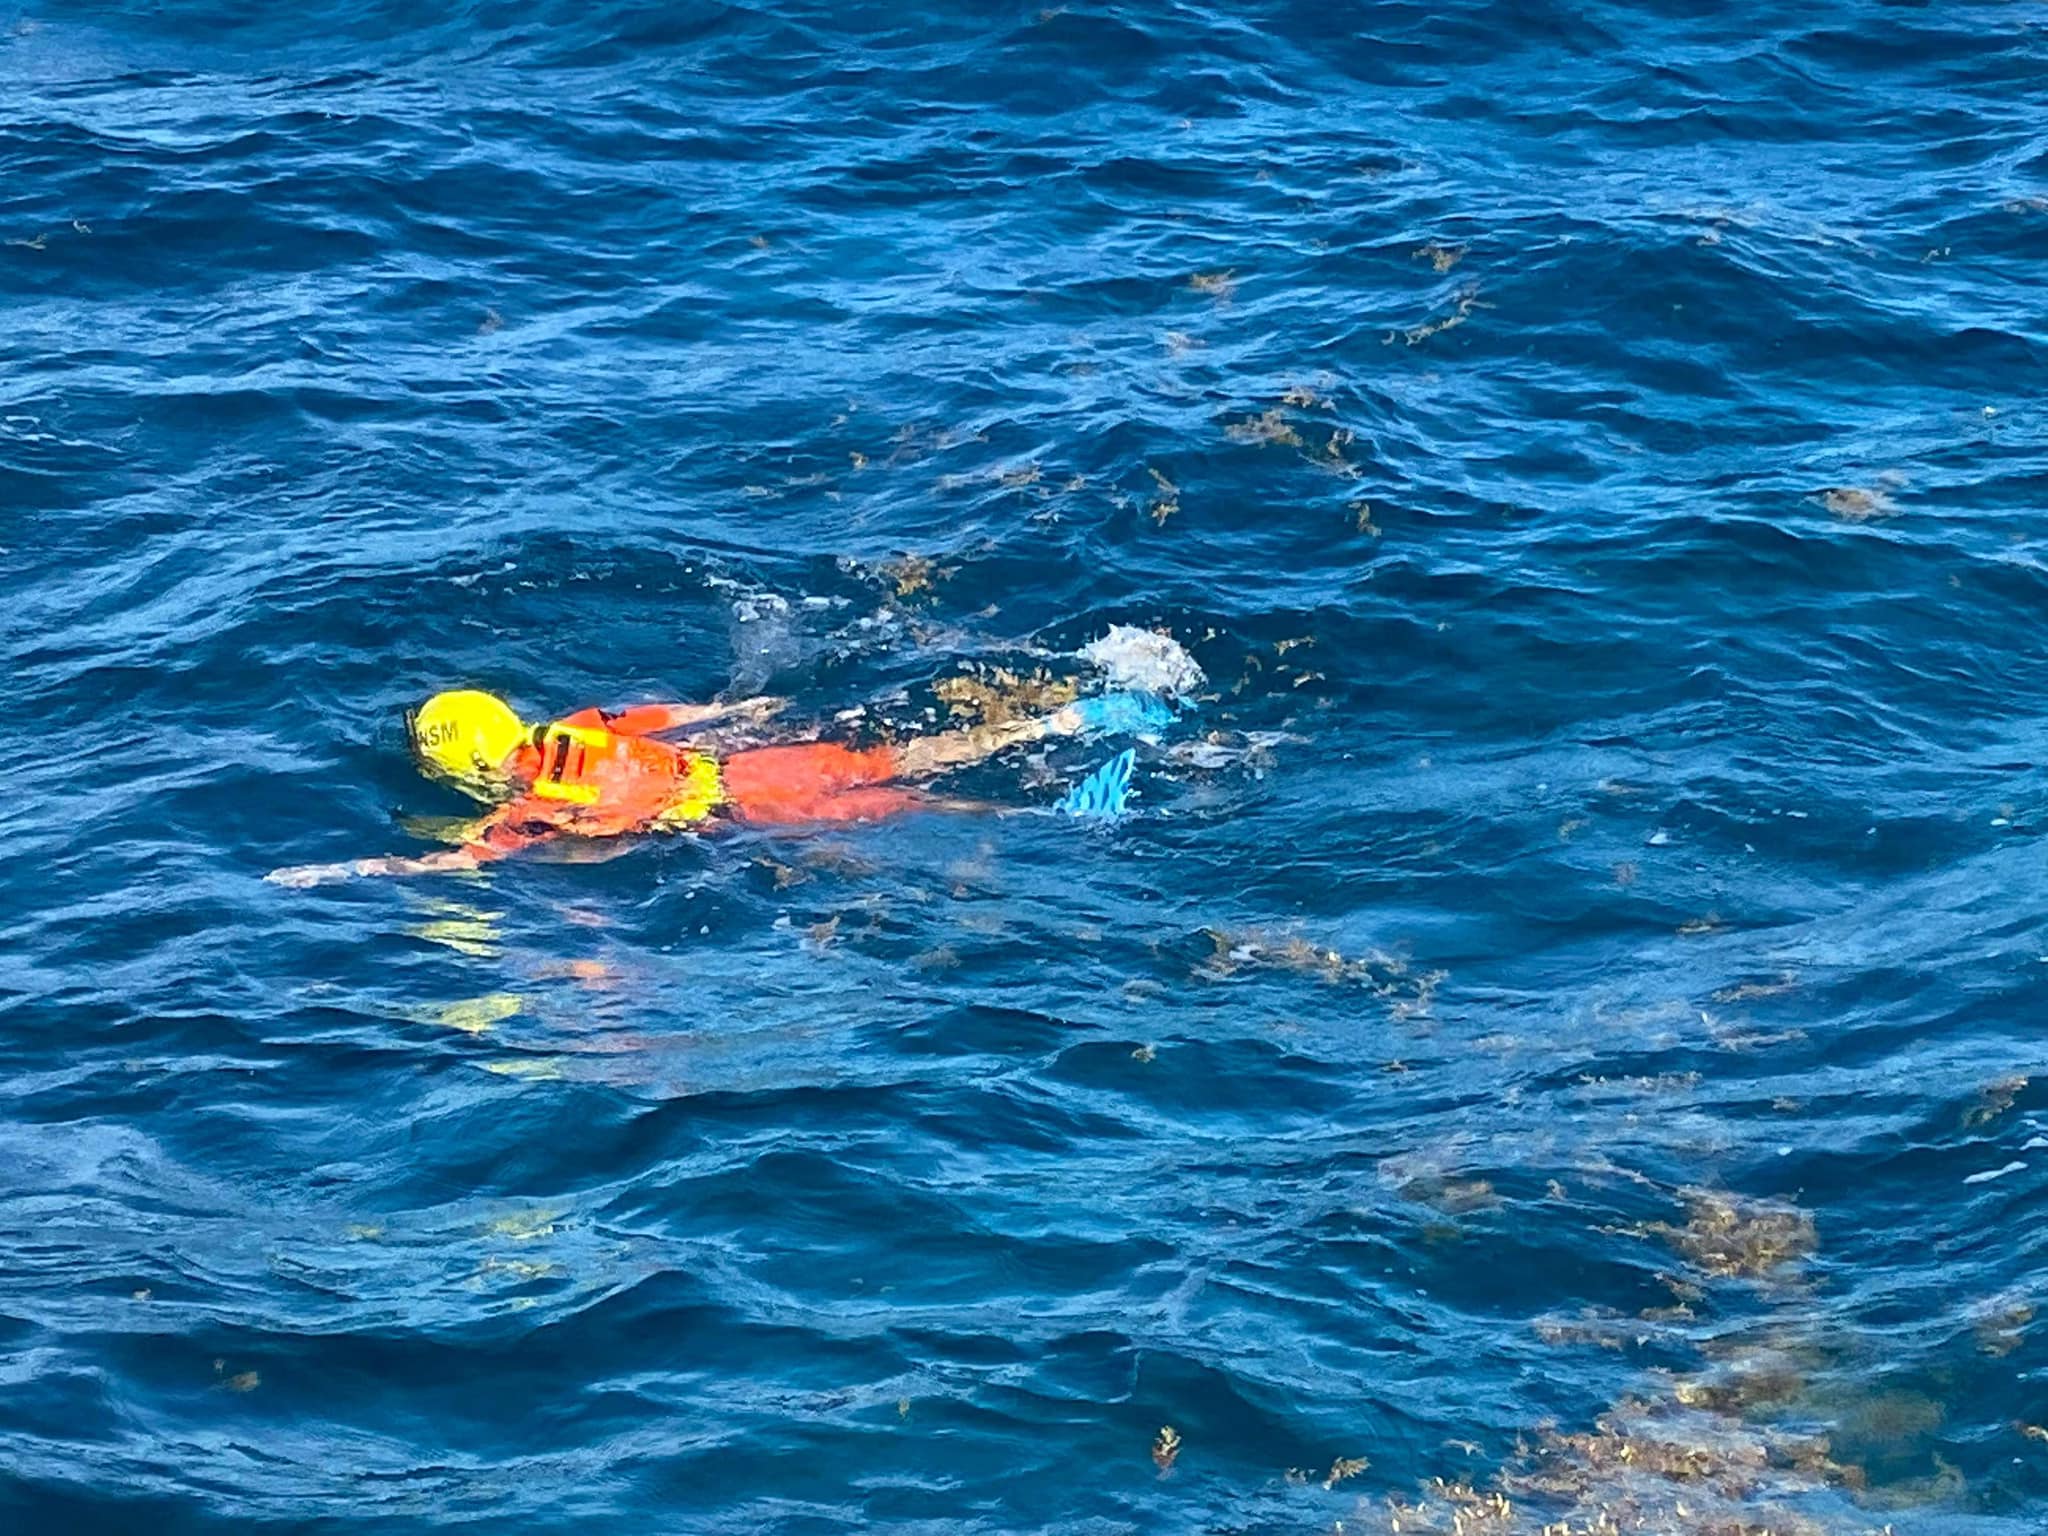     Une enfant disparue en mer à Saint-Barthélemy

